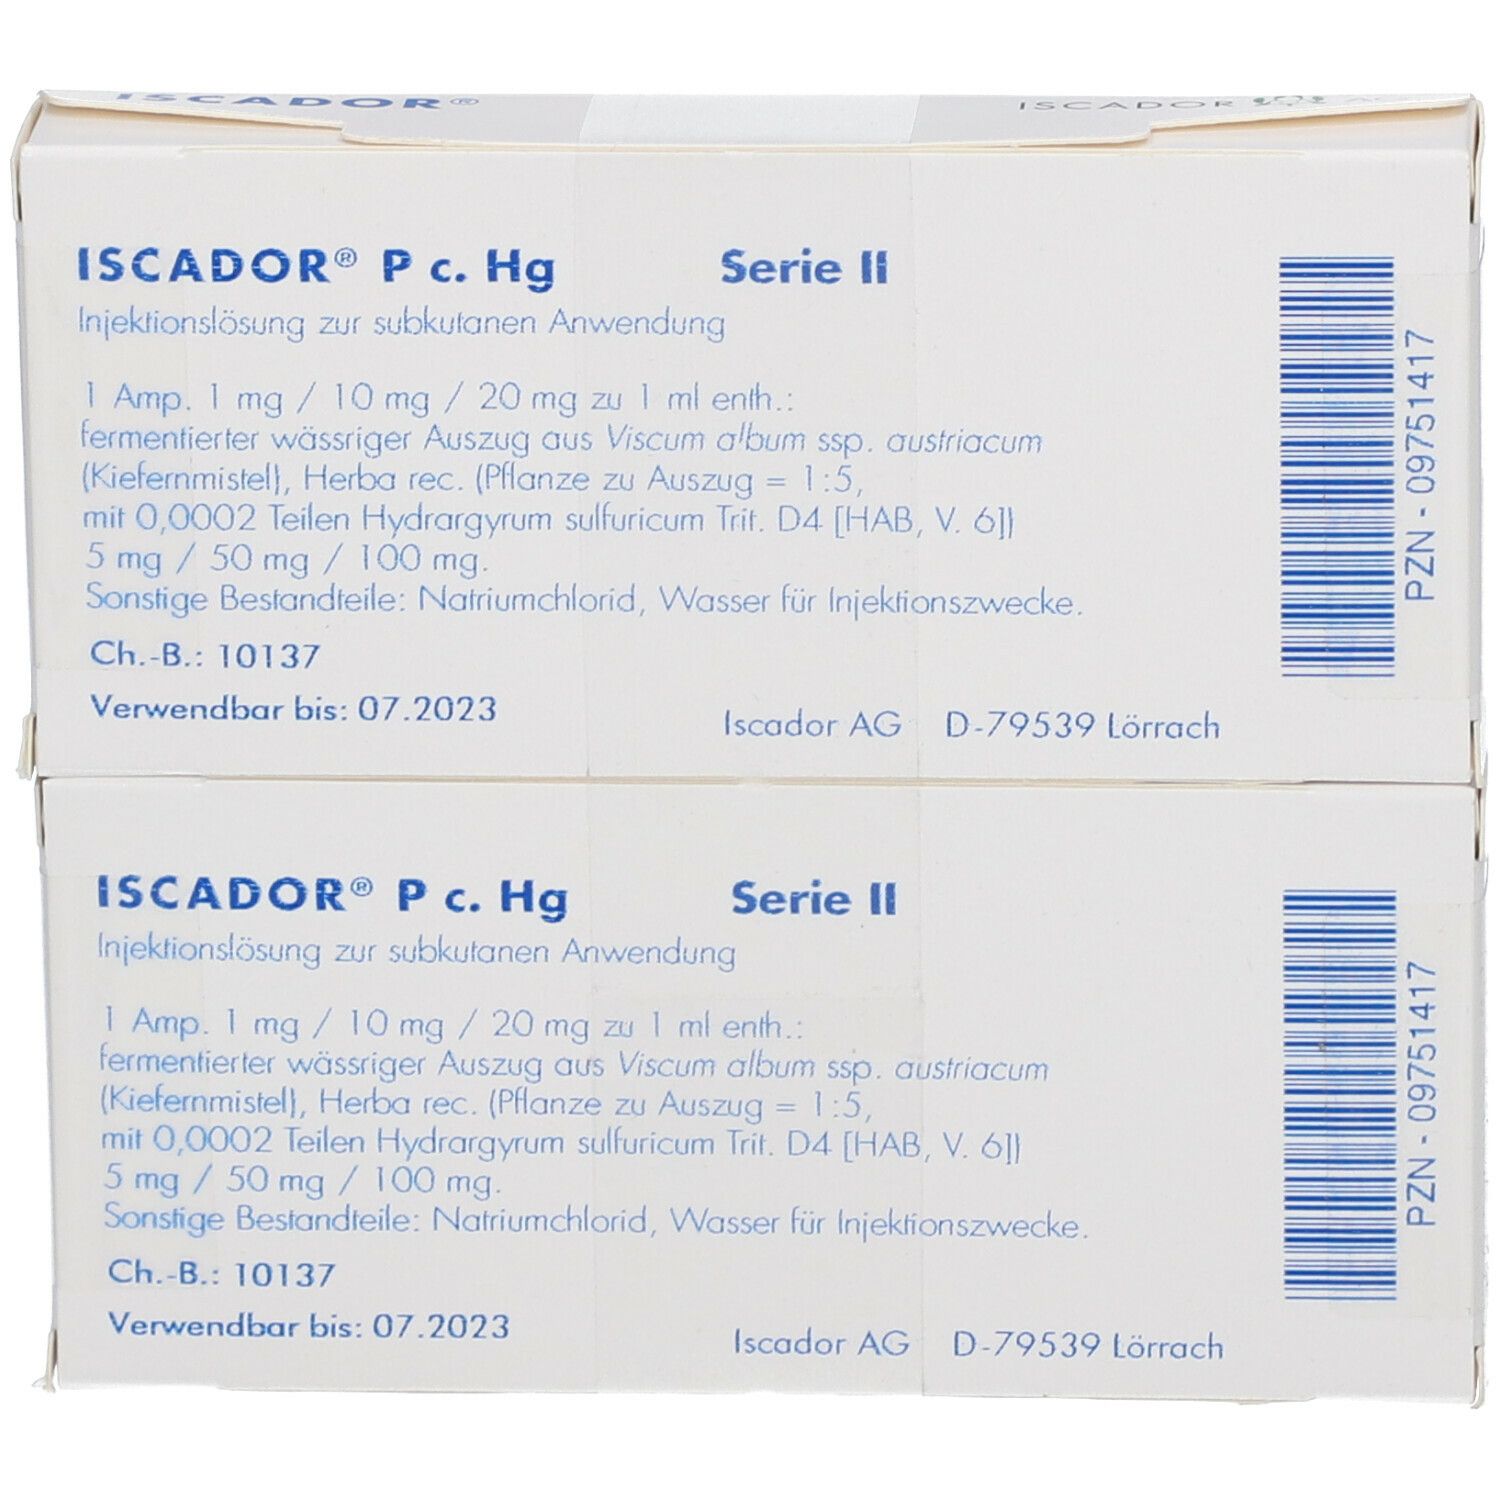 ISCADOR® P c. Hg Serie II